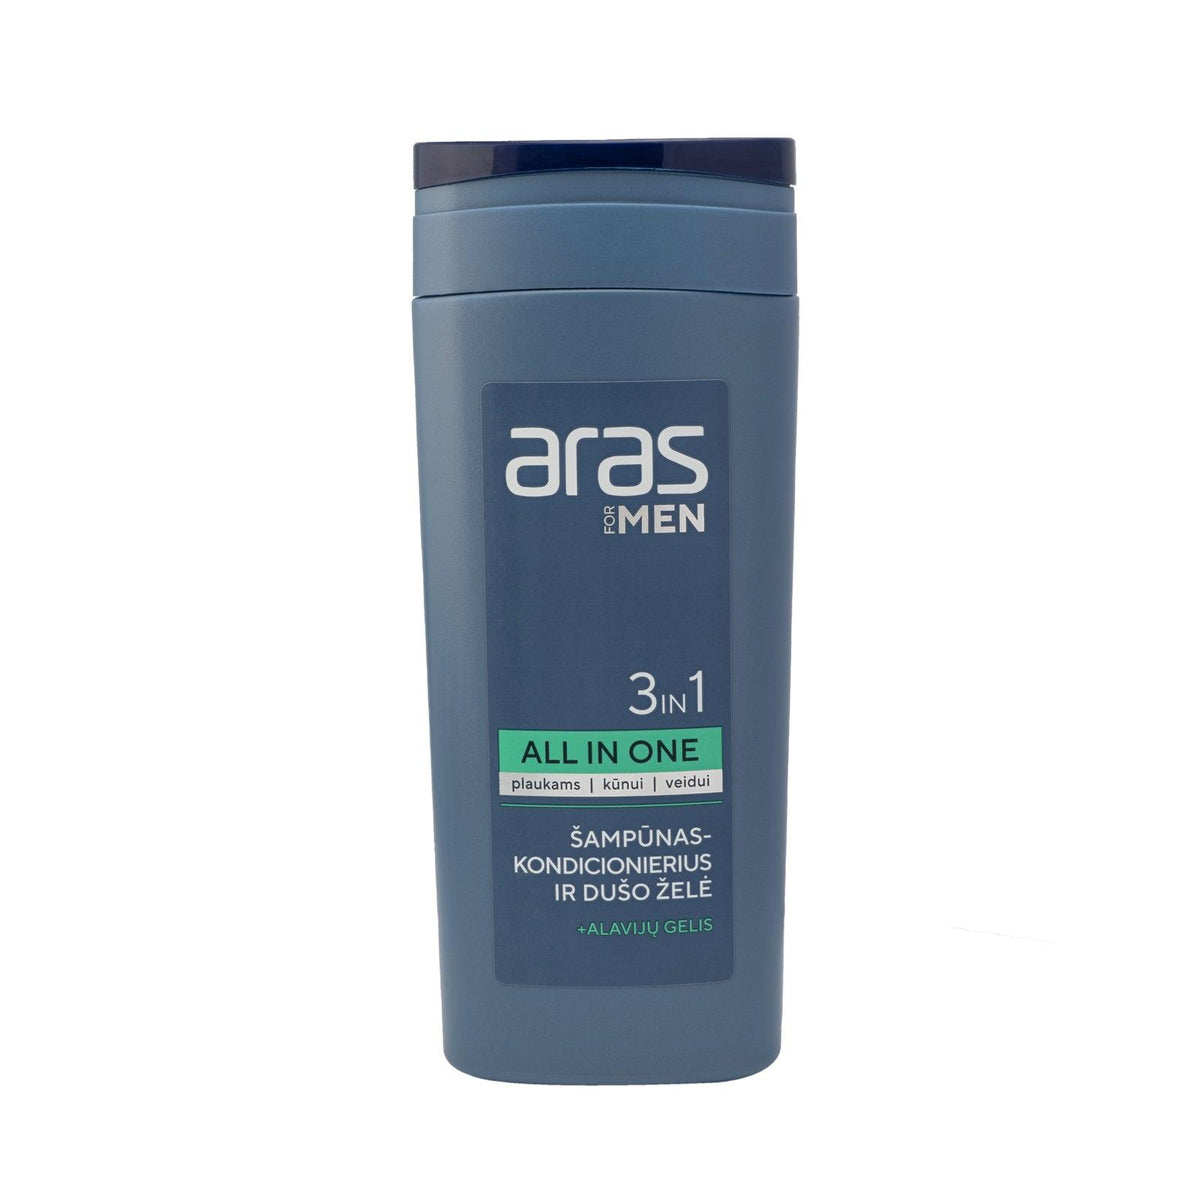 ARAS 3in1 šampūnas-kondicionierius ir dušo želė, 250 ml - TIESIOG GRAŽI